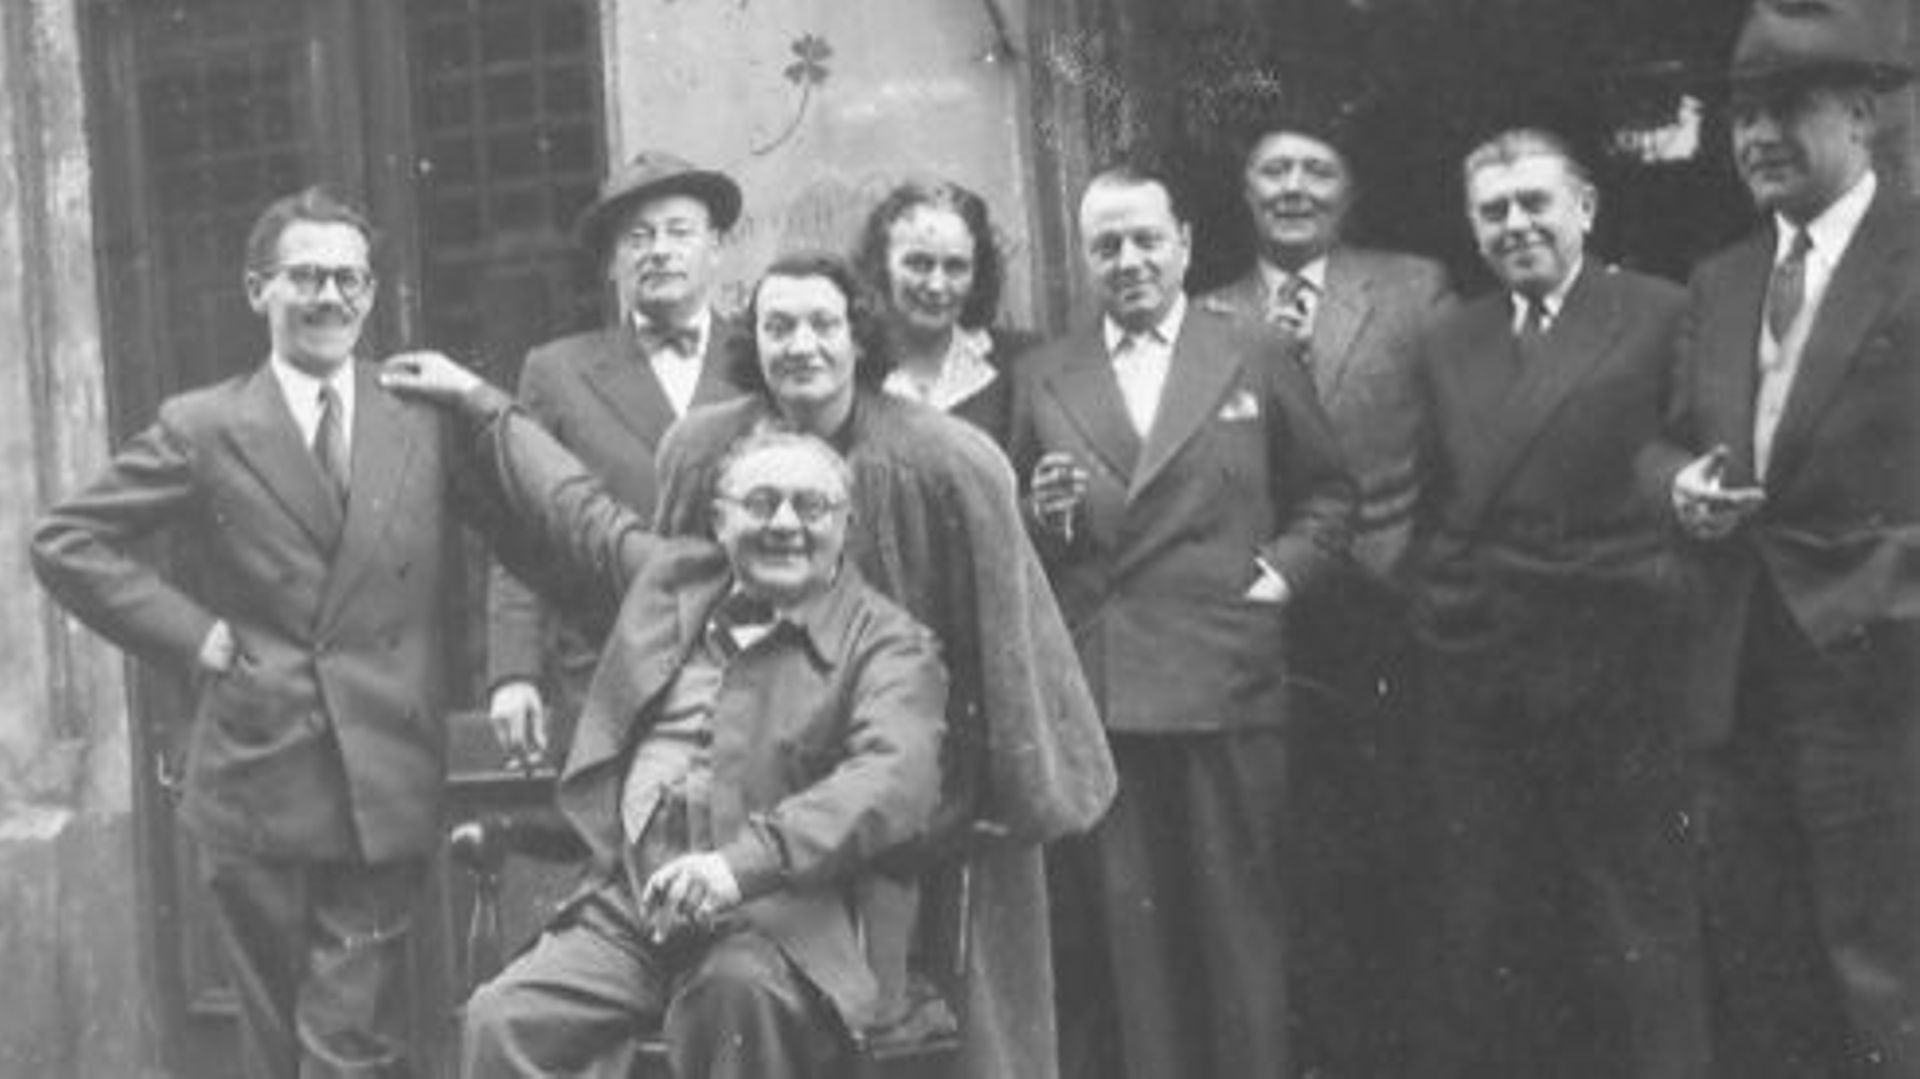 De gauche à droite : Marcel Mariën, Camille Goemans, Gérard Van Bruaene (assis), Irène Hamoir, Georgette Magritte, E.L.T. Mesens, Louis Scutenaire, René Magritte, Paul Colinet, à La Fleur en Papier Doré à Bruxelles